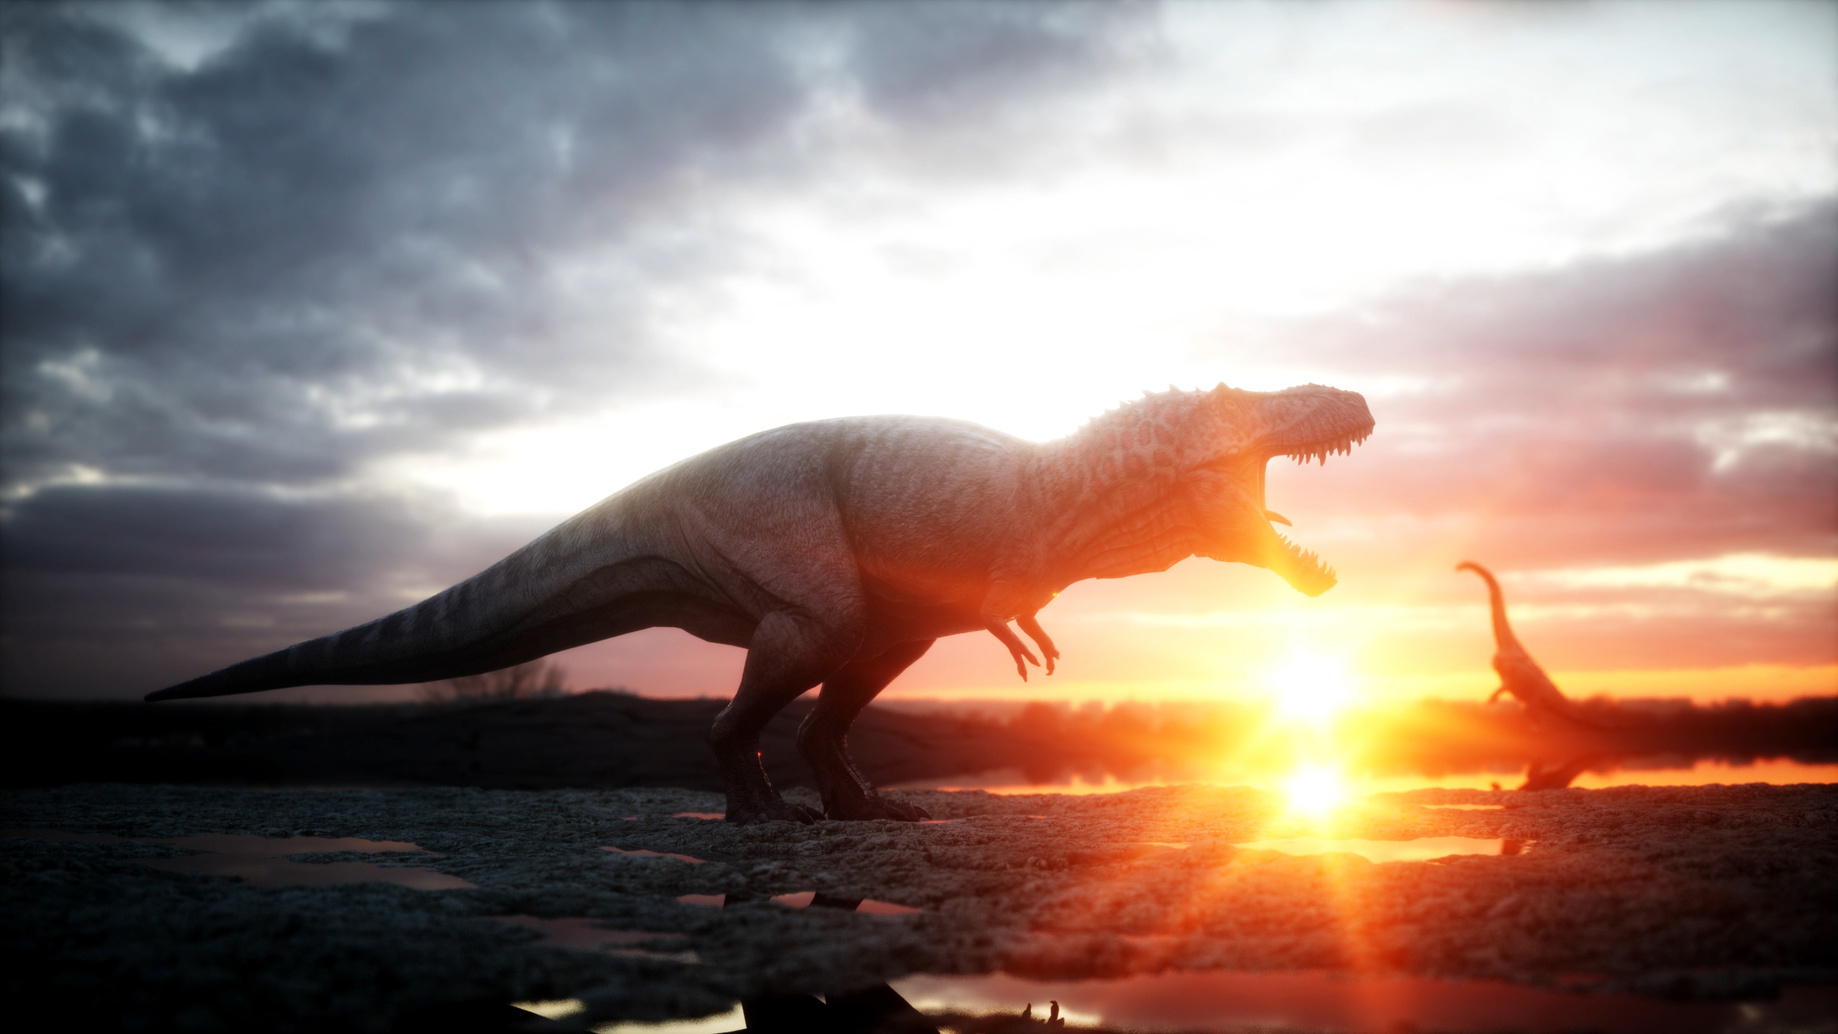 Suite à d'importantes éruptions volcaniques, les dinosaures ont pris leur essor. © chagpg, fotolia